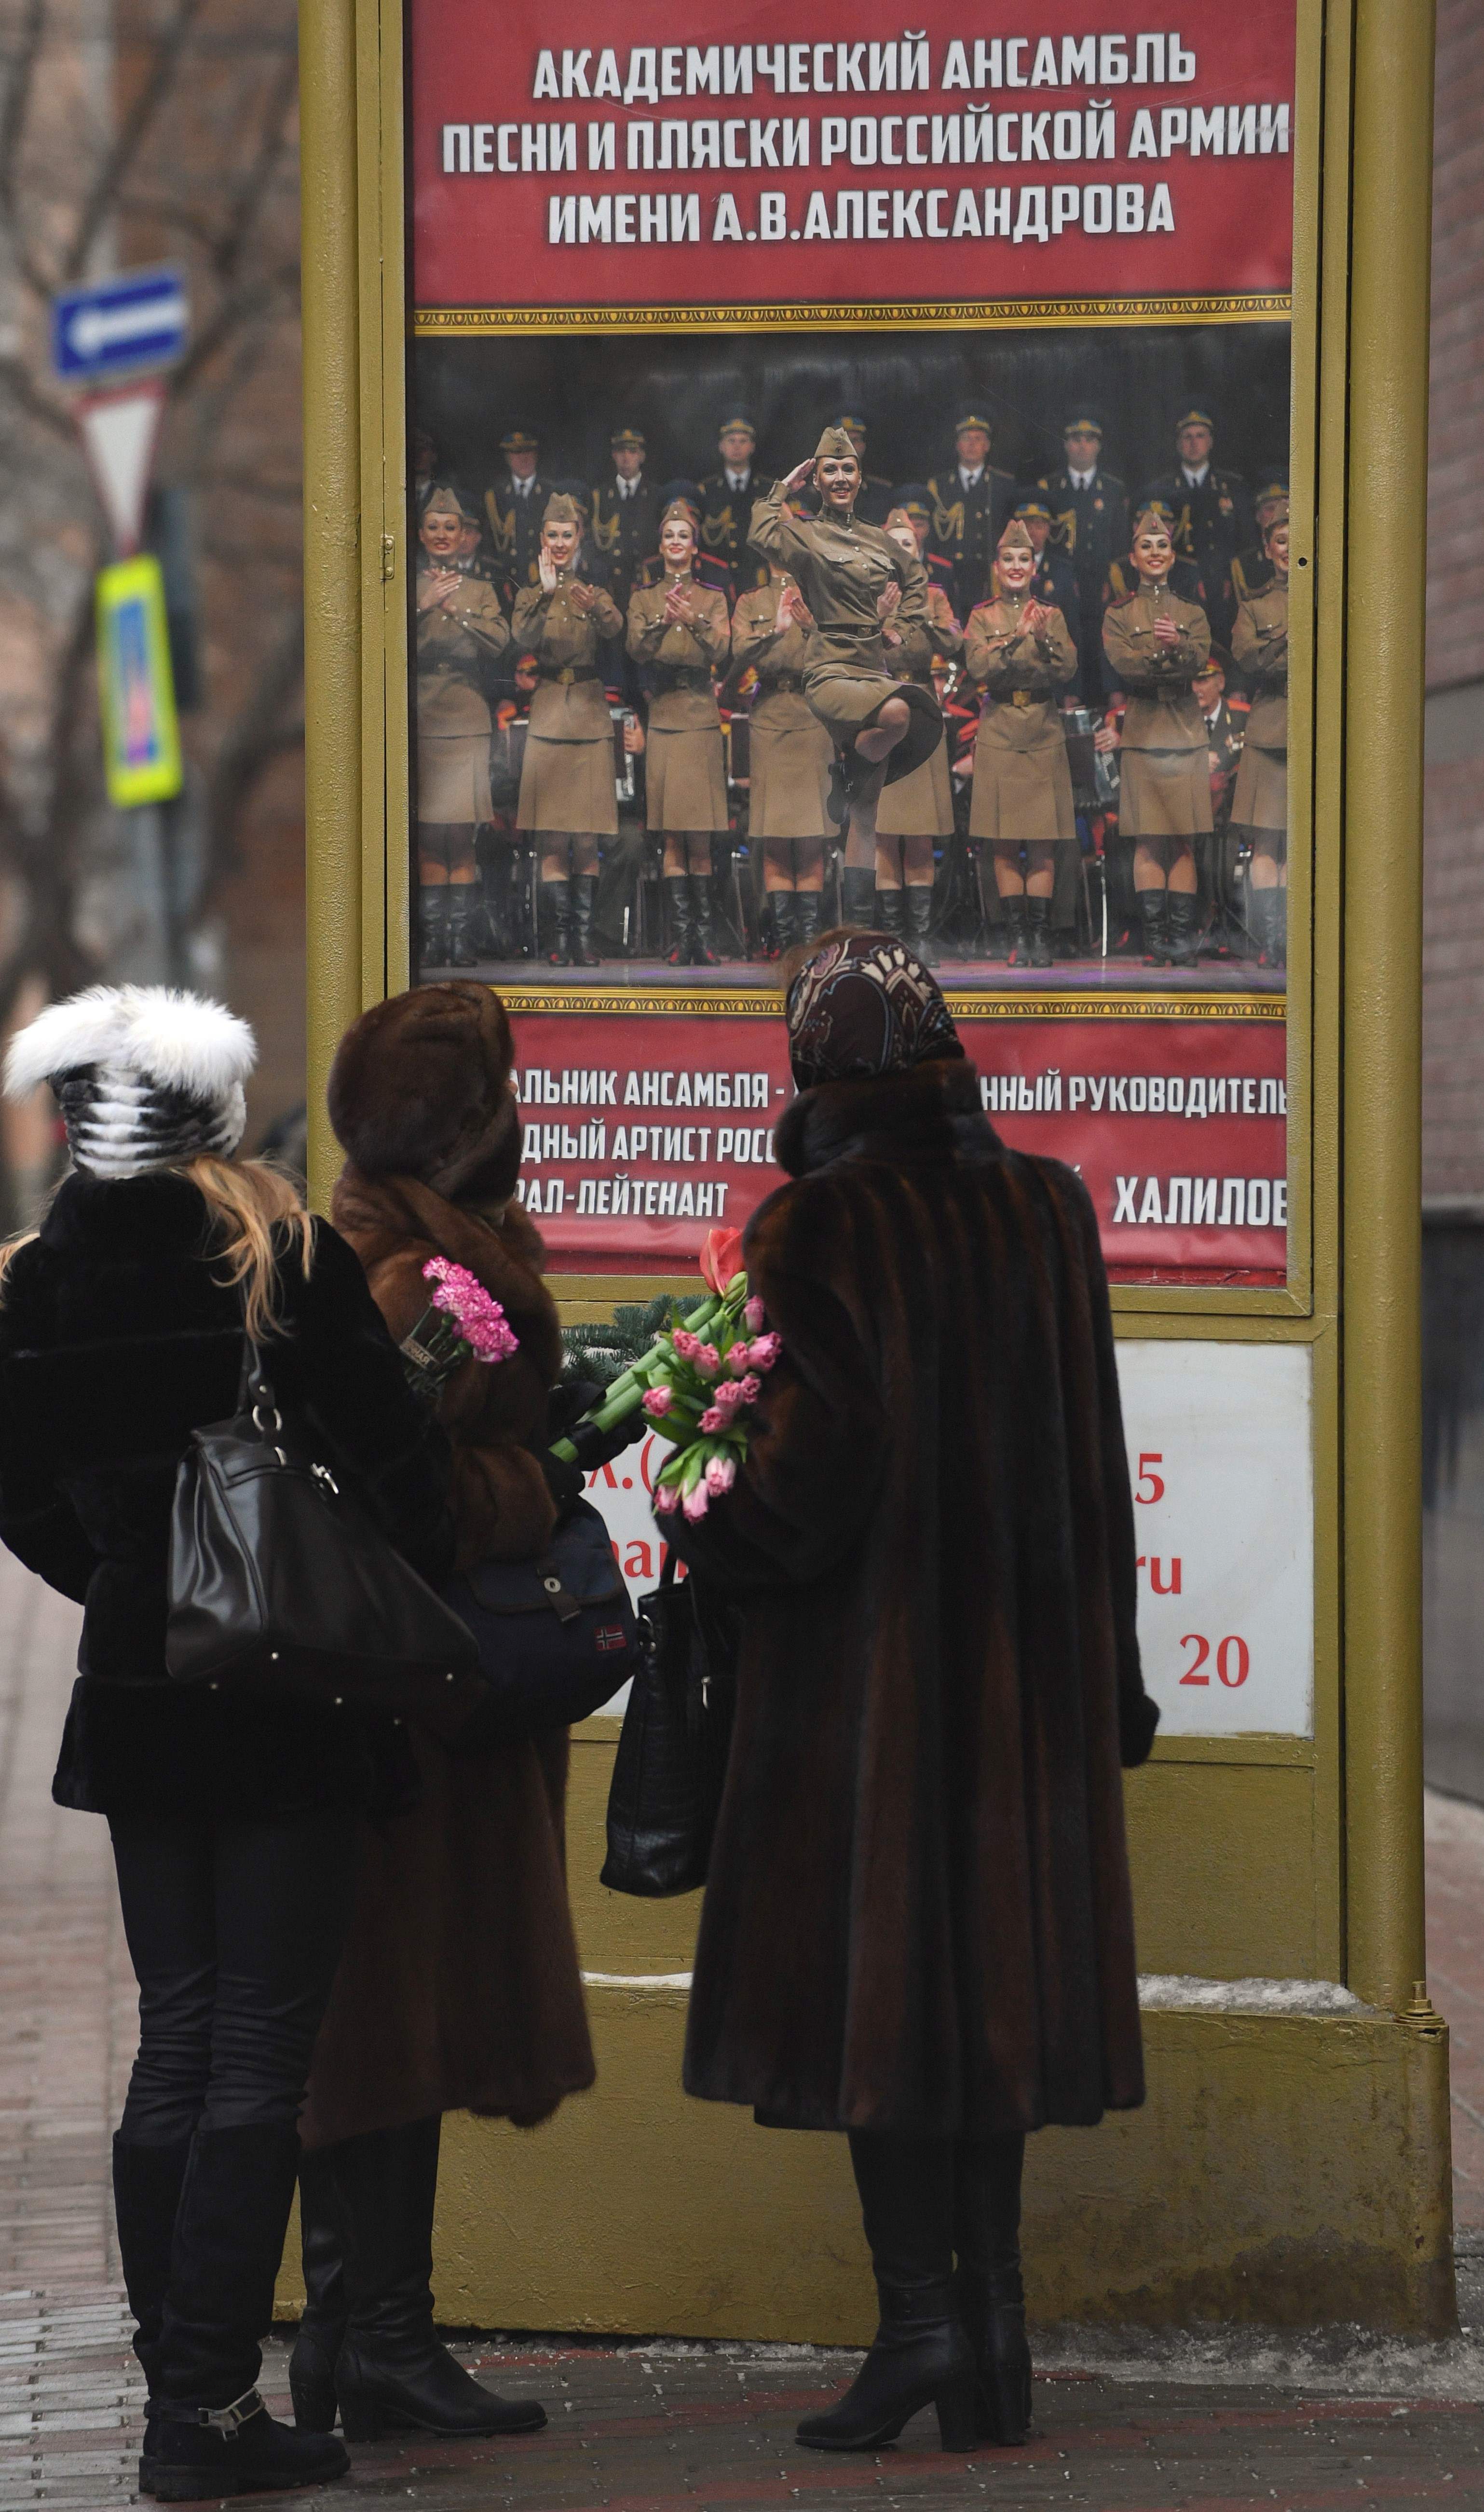 روسيات يضعن الزهور على باب مبنى مسرح الفرقة الموسيقية التابعة للجيش الروسى